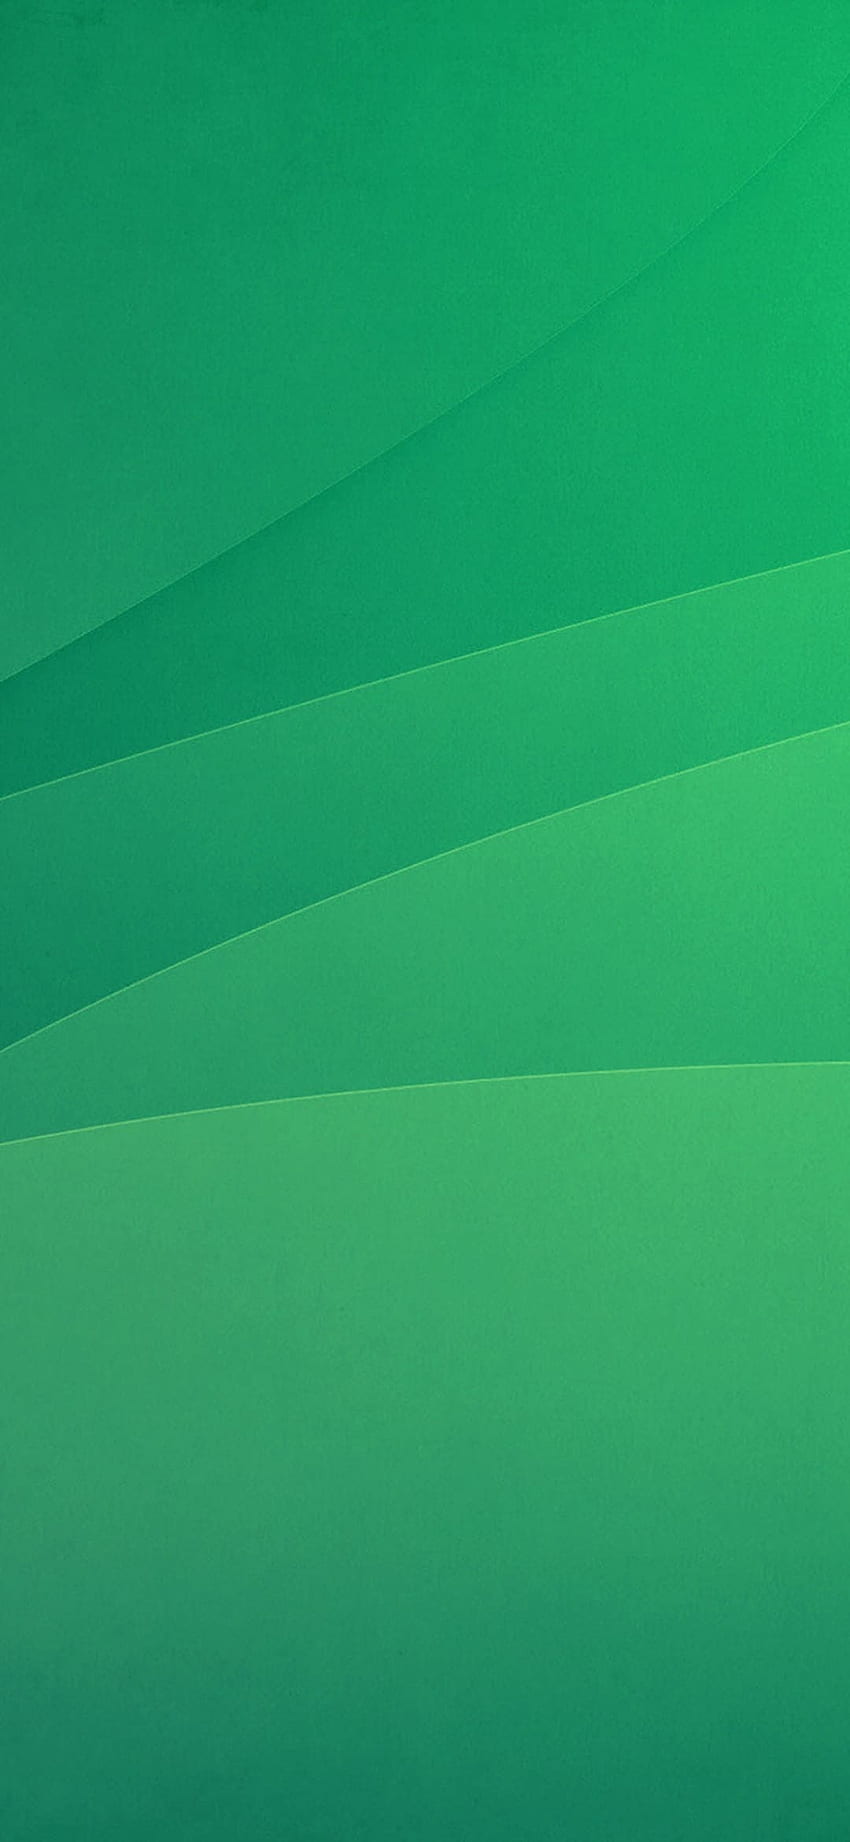 緑 : 上部の緑色の背景 [ ]、緑がかった色 HD電話の壁紙